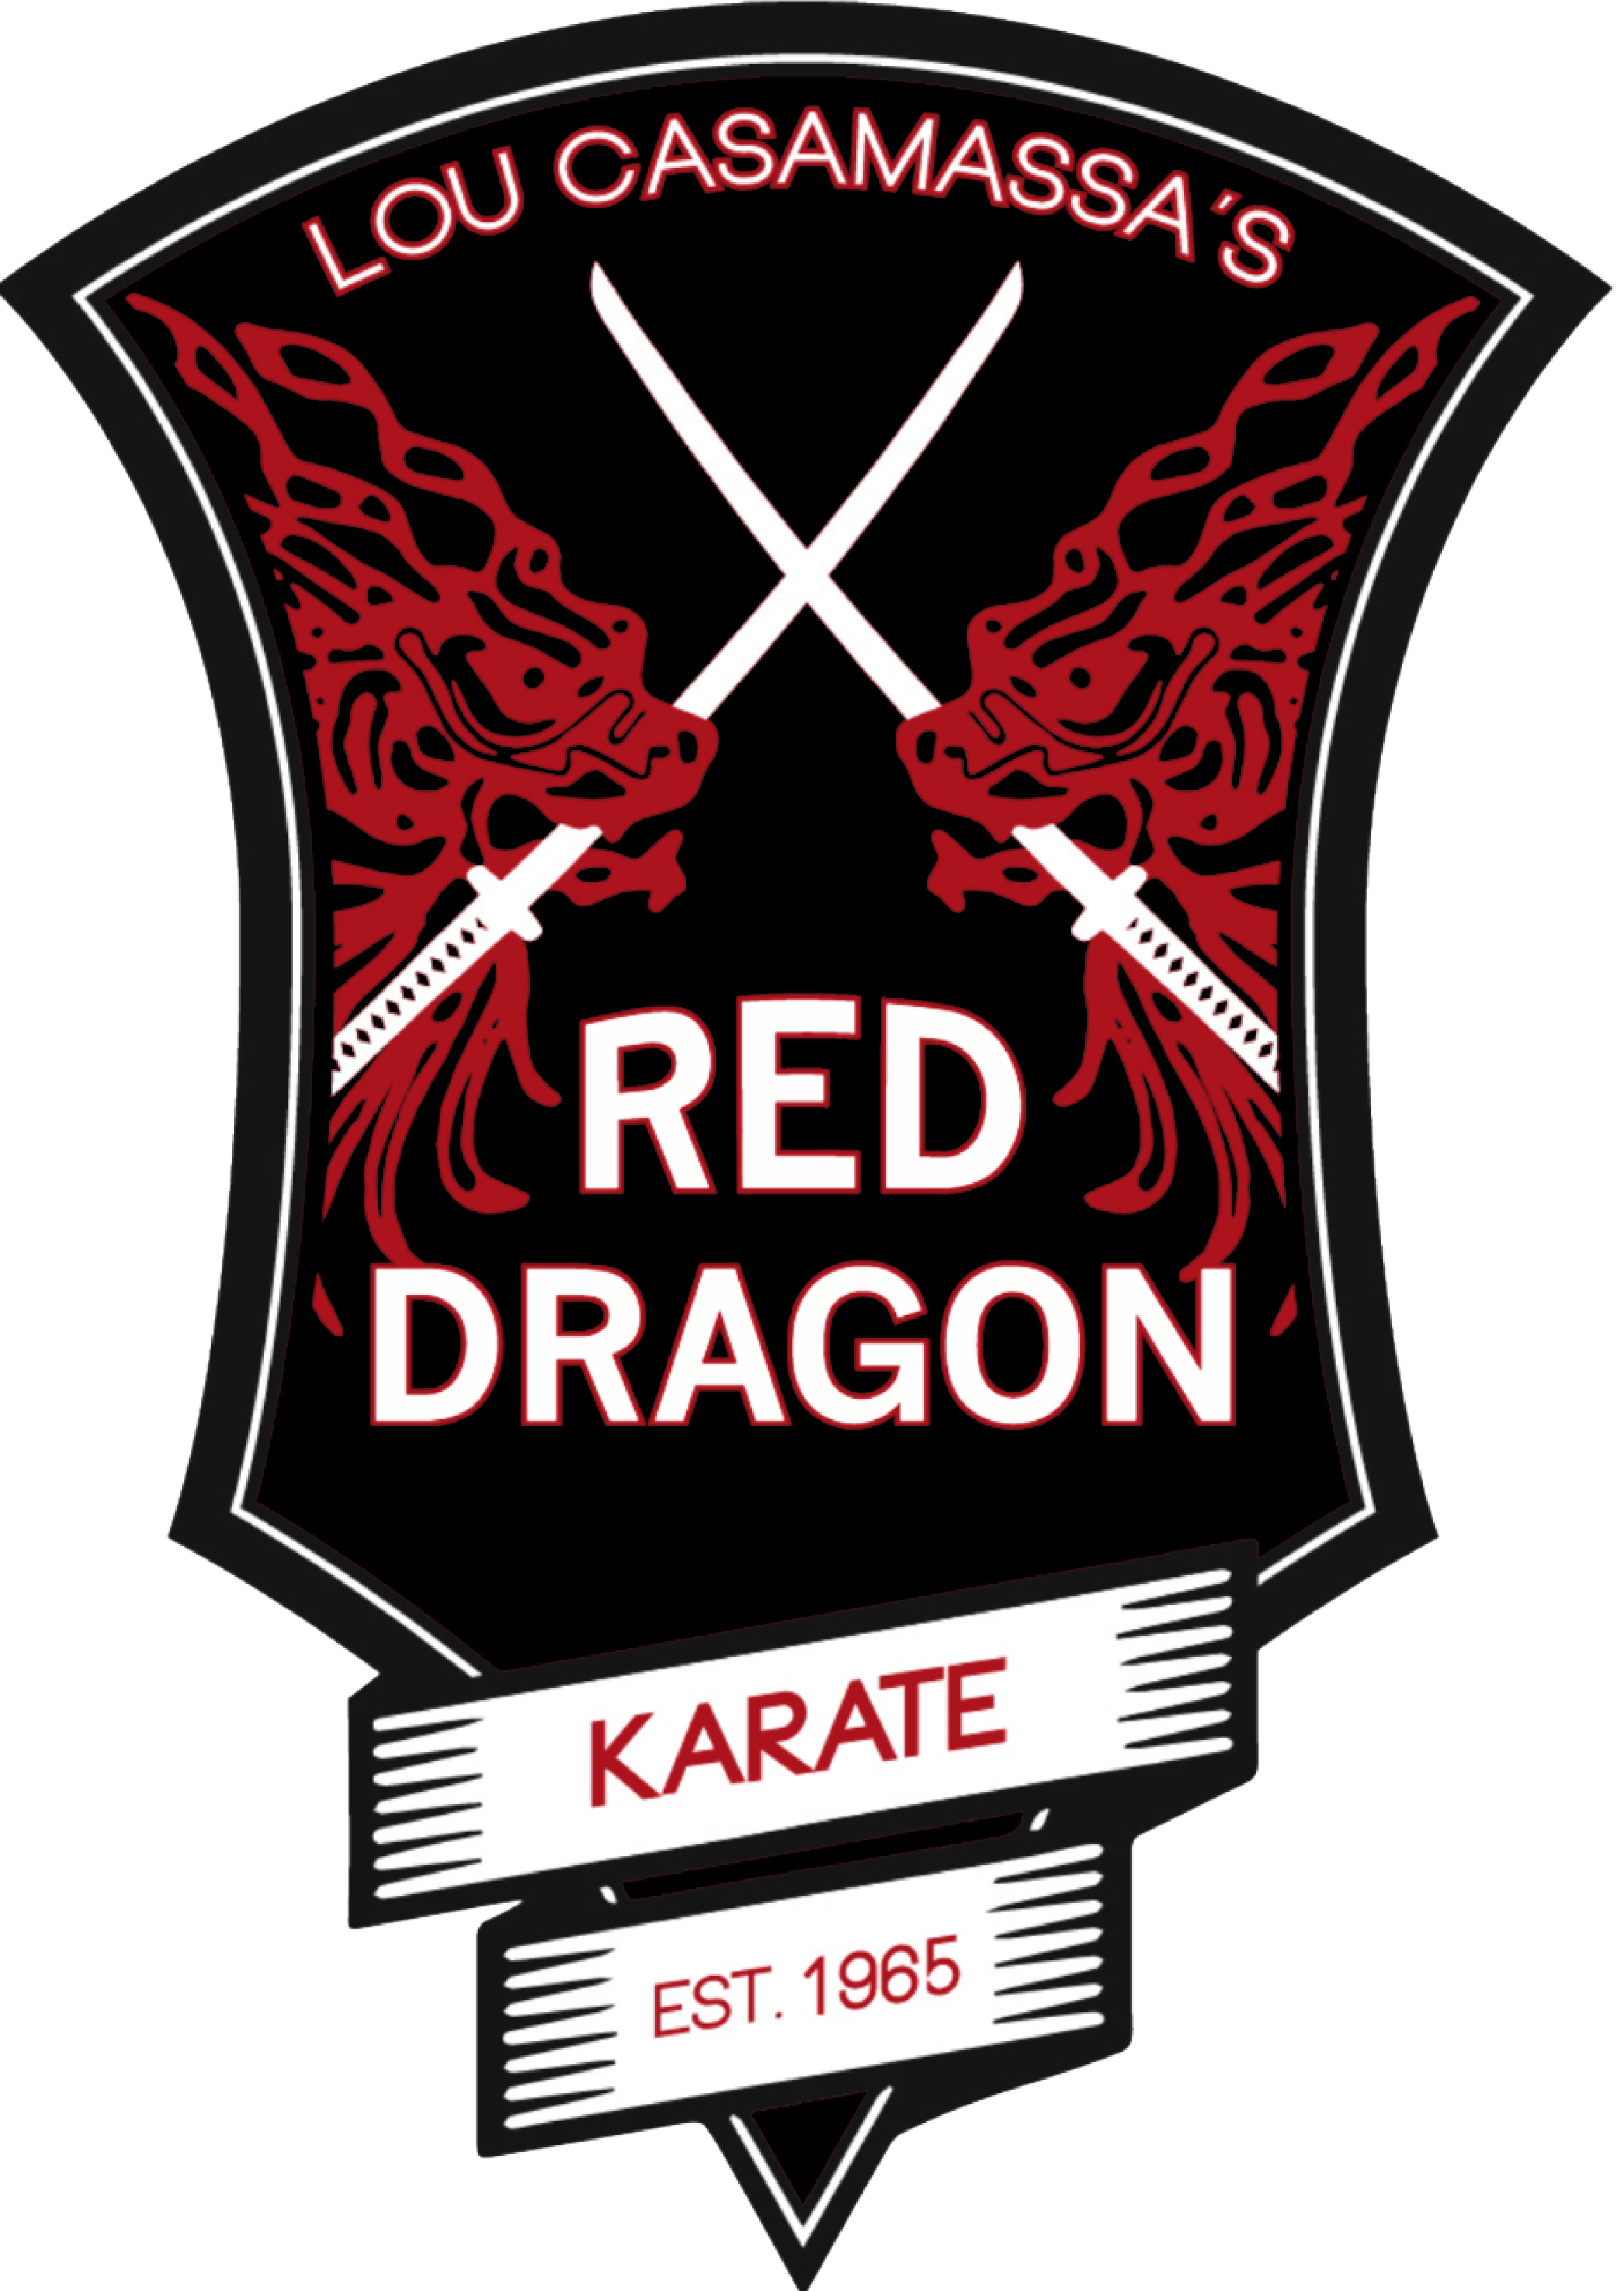 Red Dragon Karate